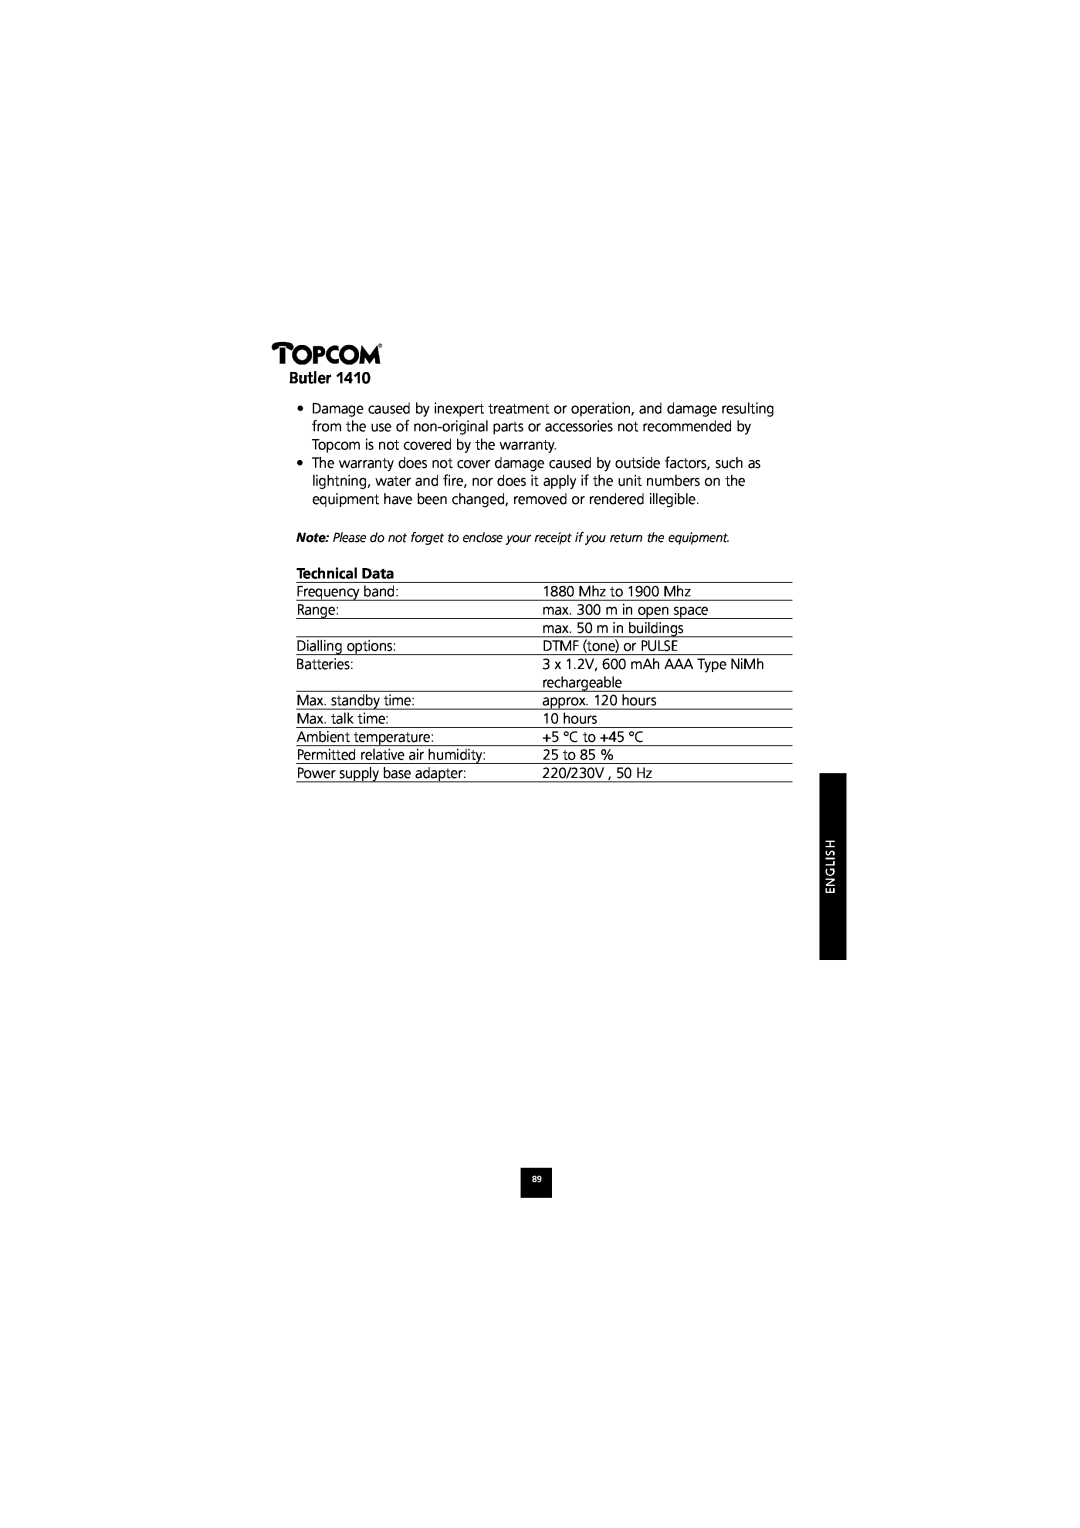 Topcom 1410 manual Technical Data, Butler 